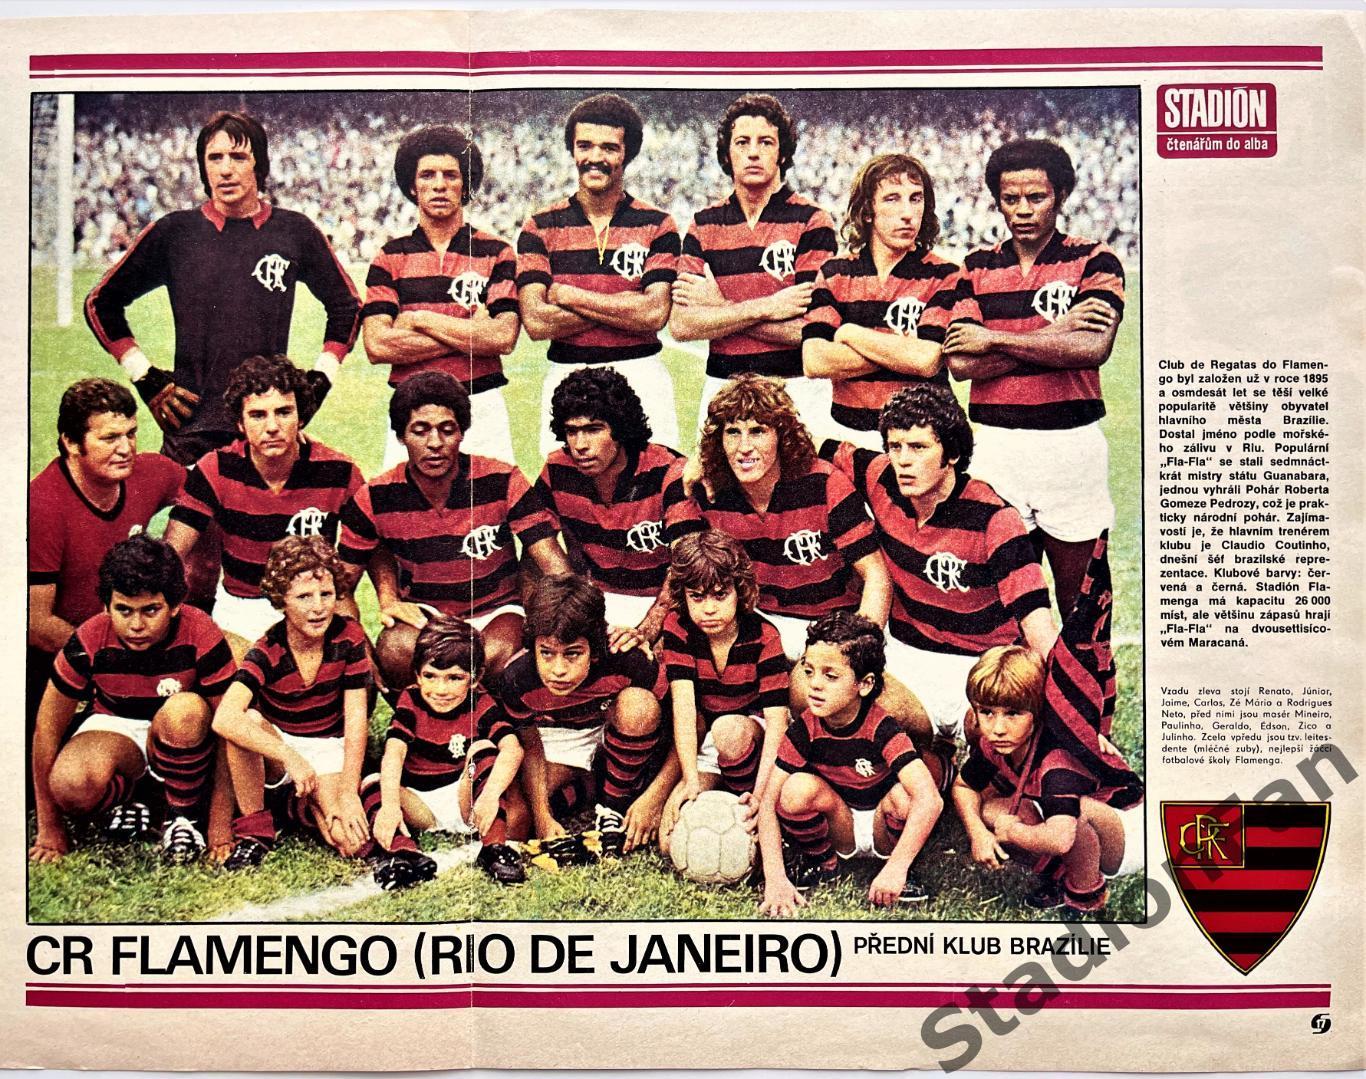 Постер из журнала Стадион (Stadion) - Flamengo, 1977.